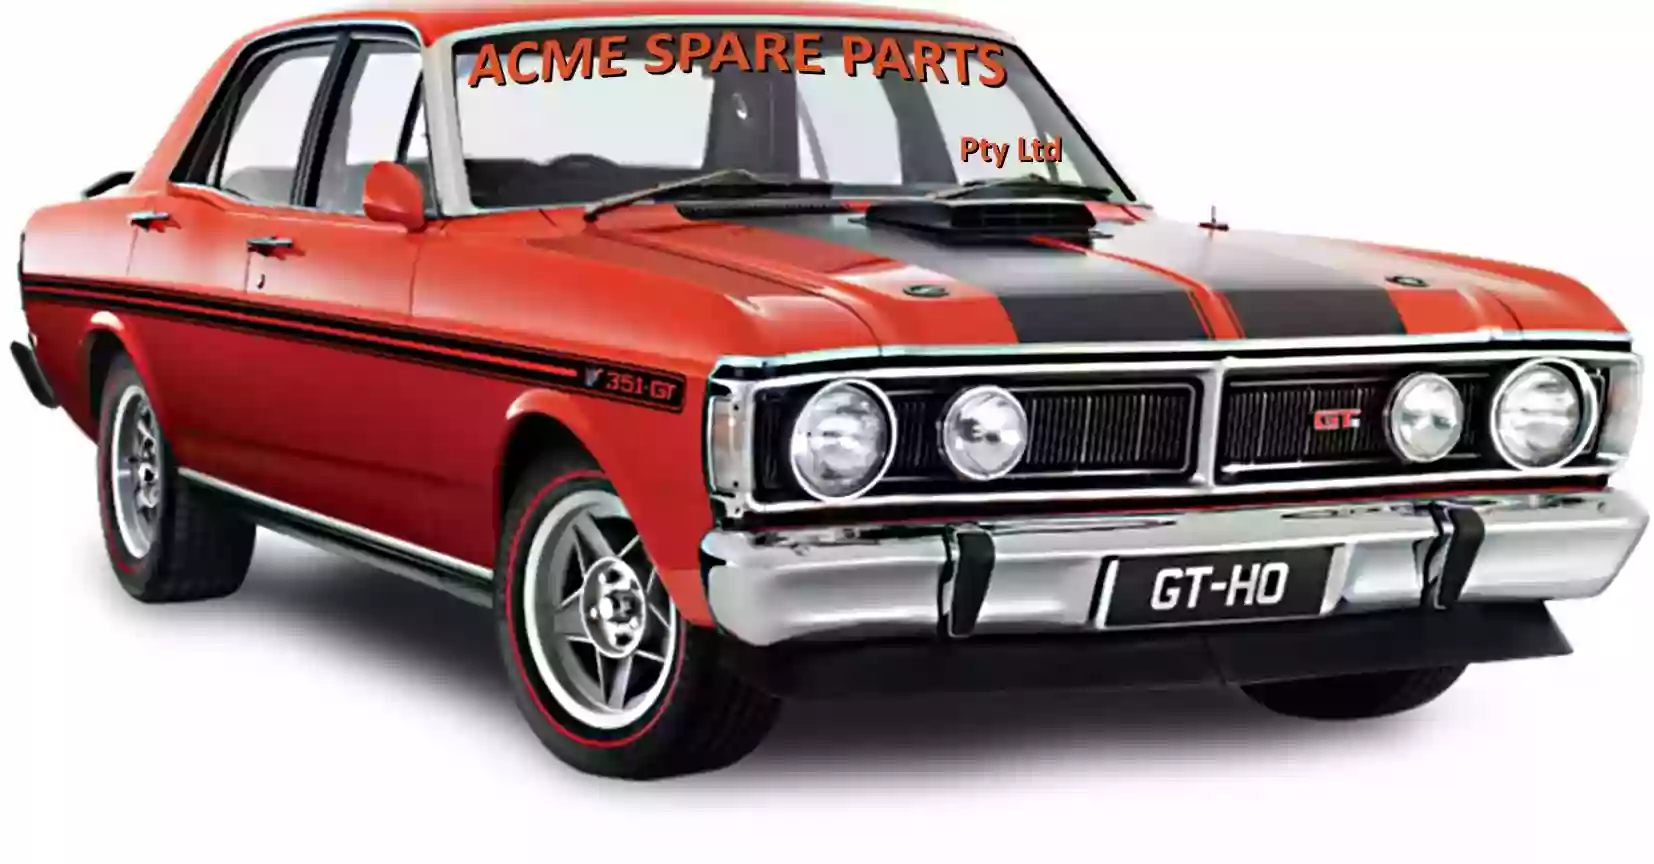 Acme Spare Parts Pty Ltd